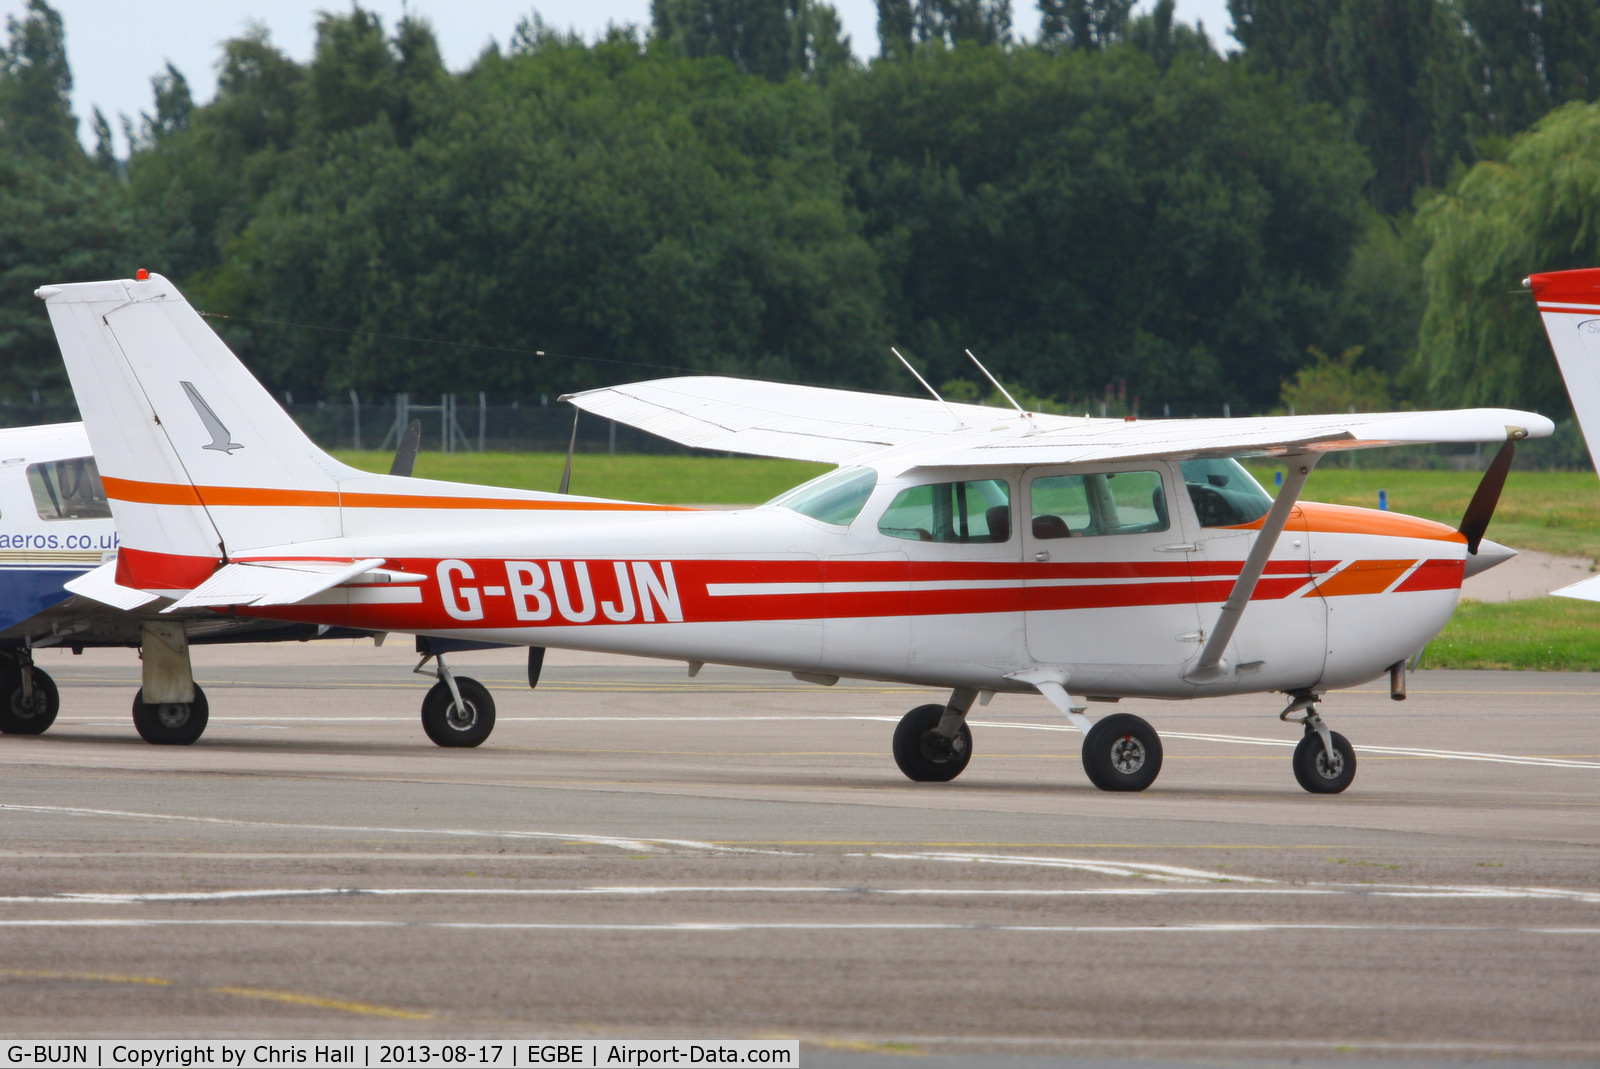 G-BUJN, 1979 Cessna 172N C/N 172-72713, Warwickshire Aviation Ltd